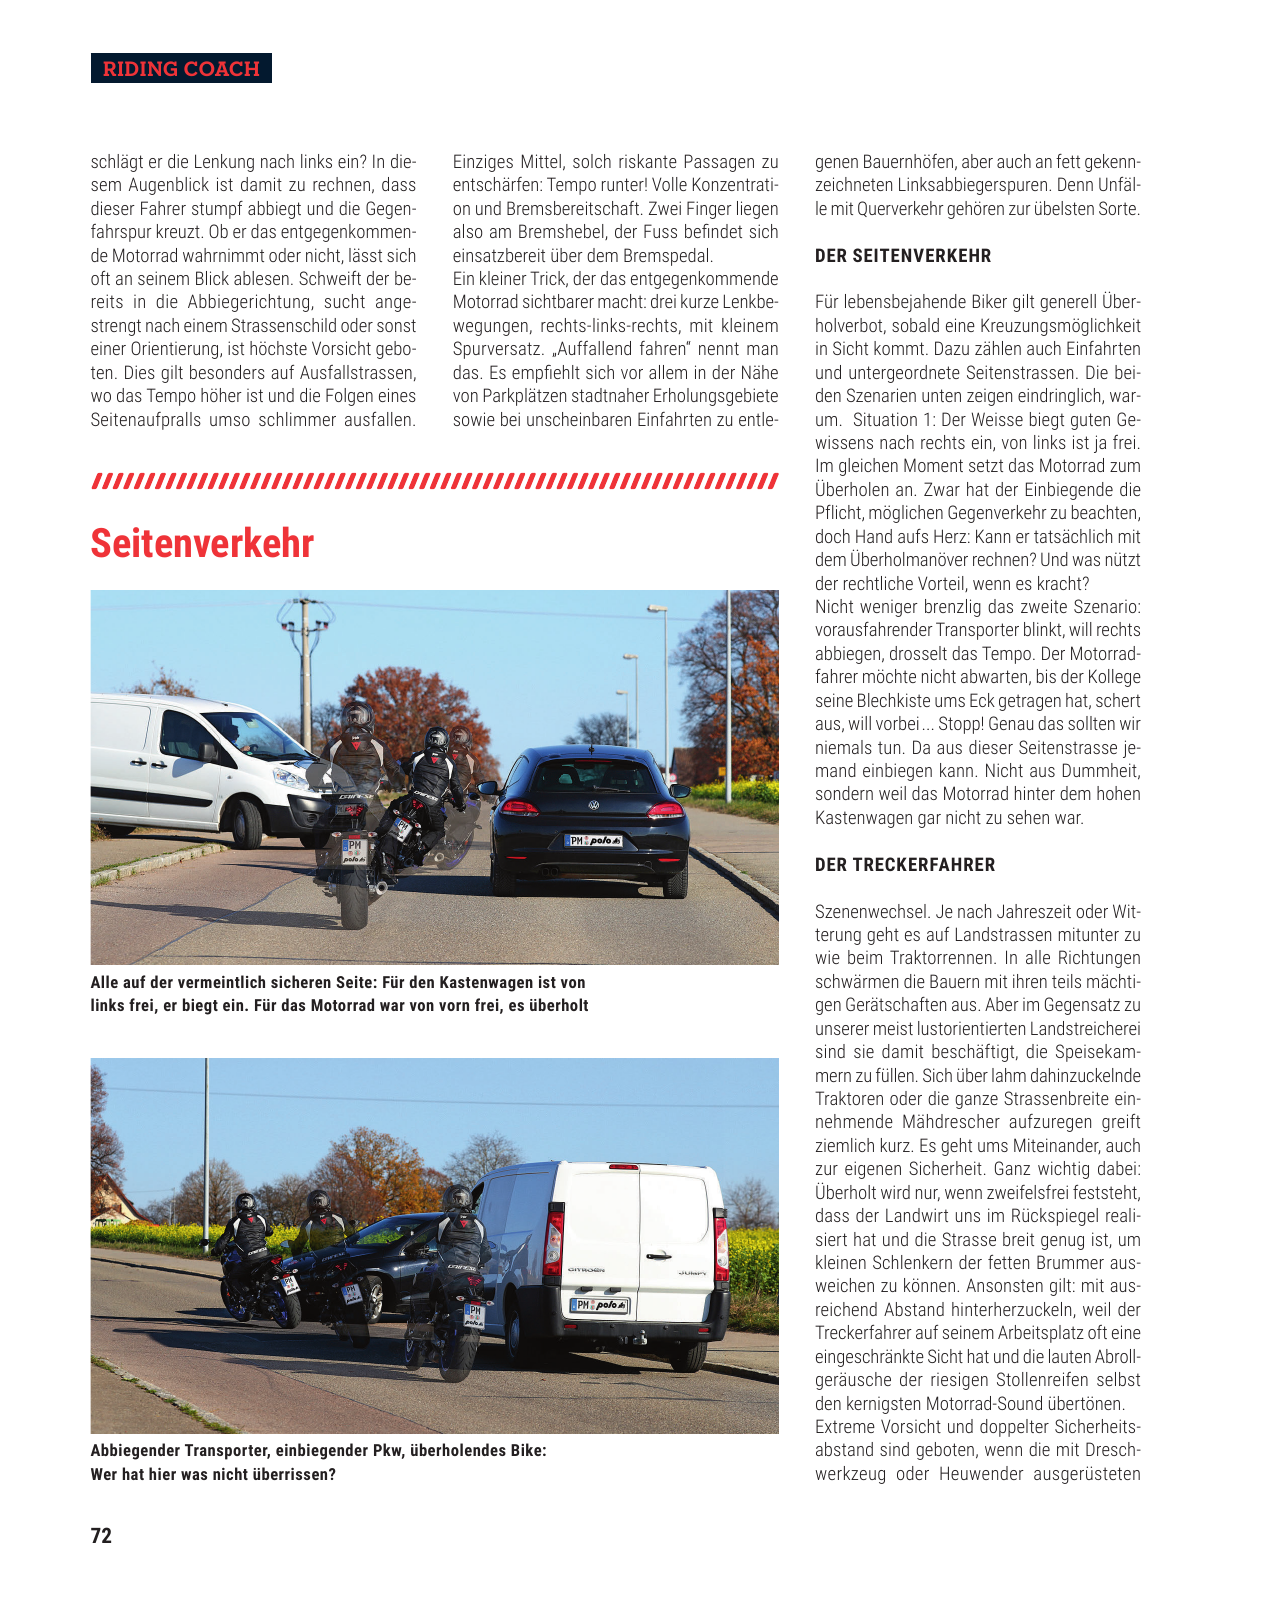 Vorschau polo-motorrad-mach-dein-ding-ch-de-Q6N3ypgVk4 Seite 72